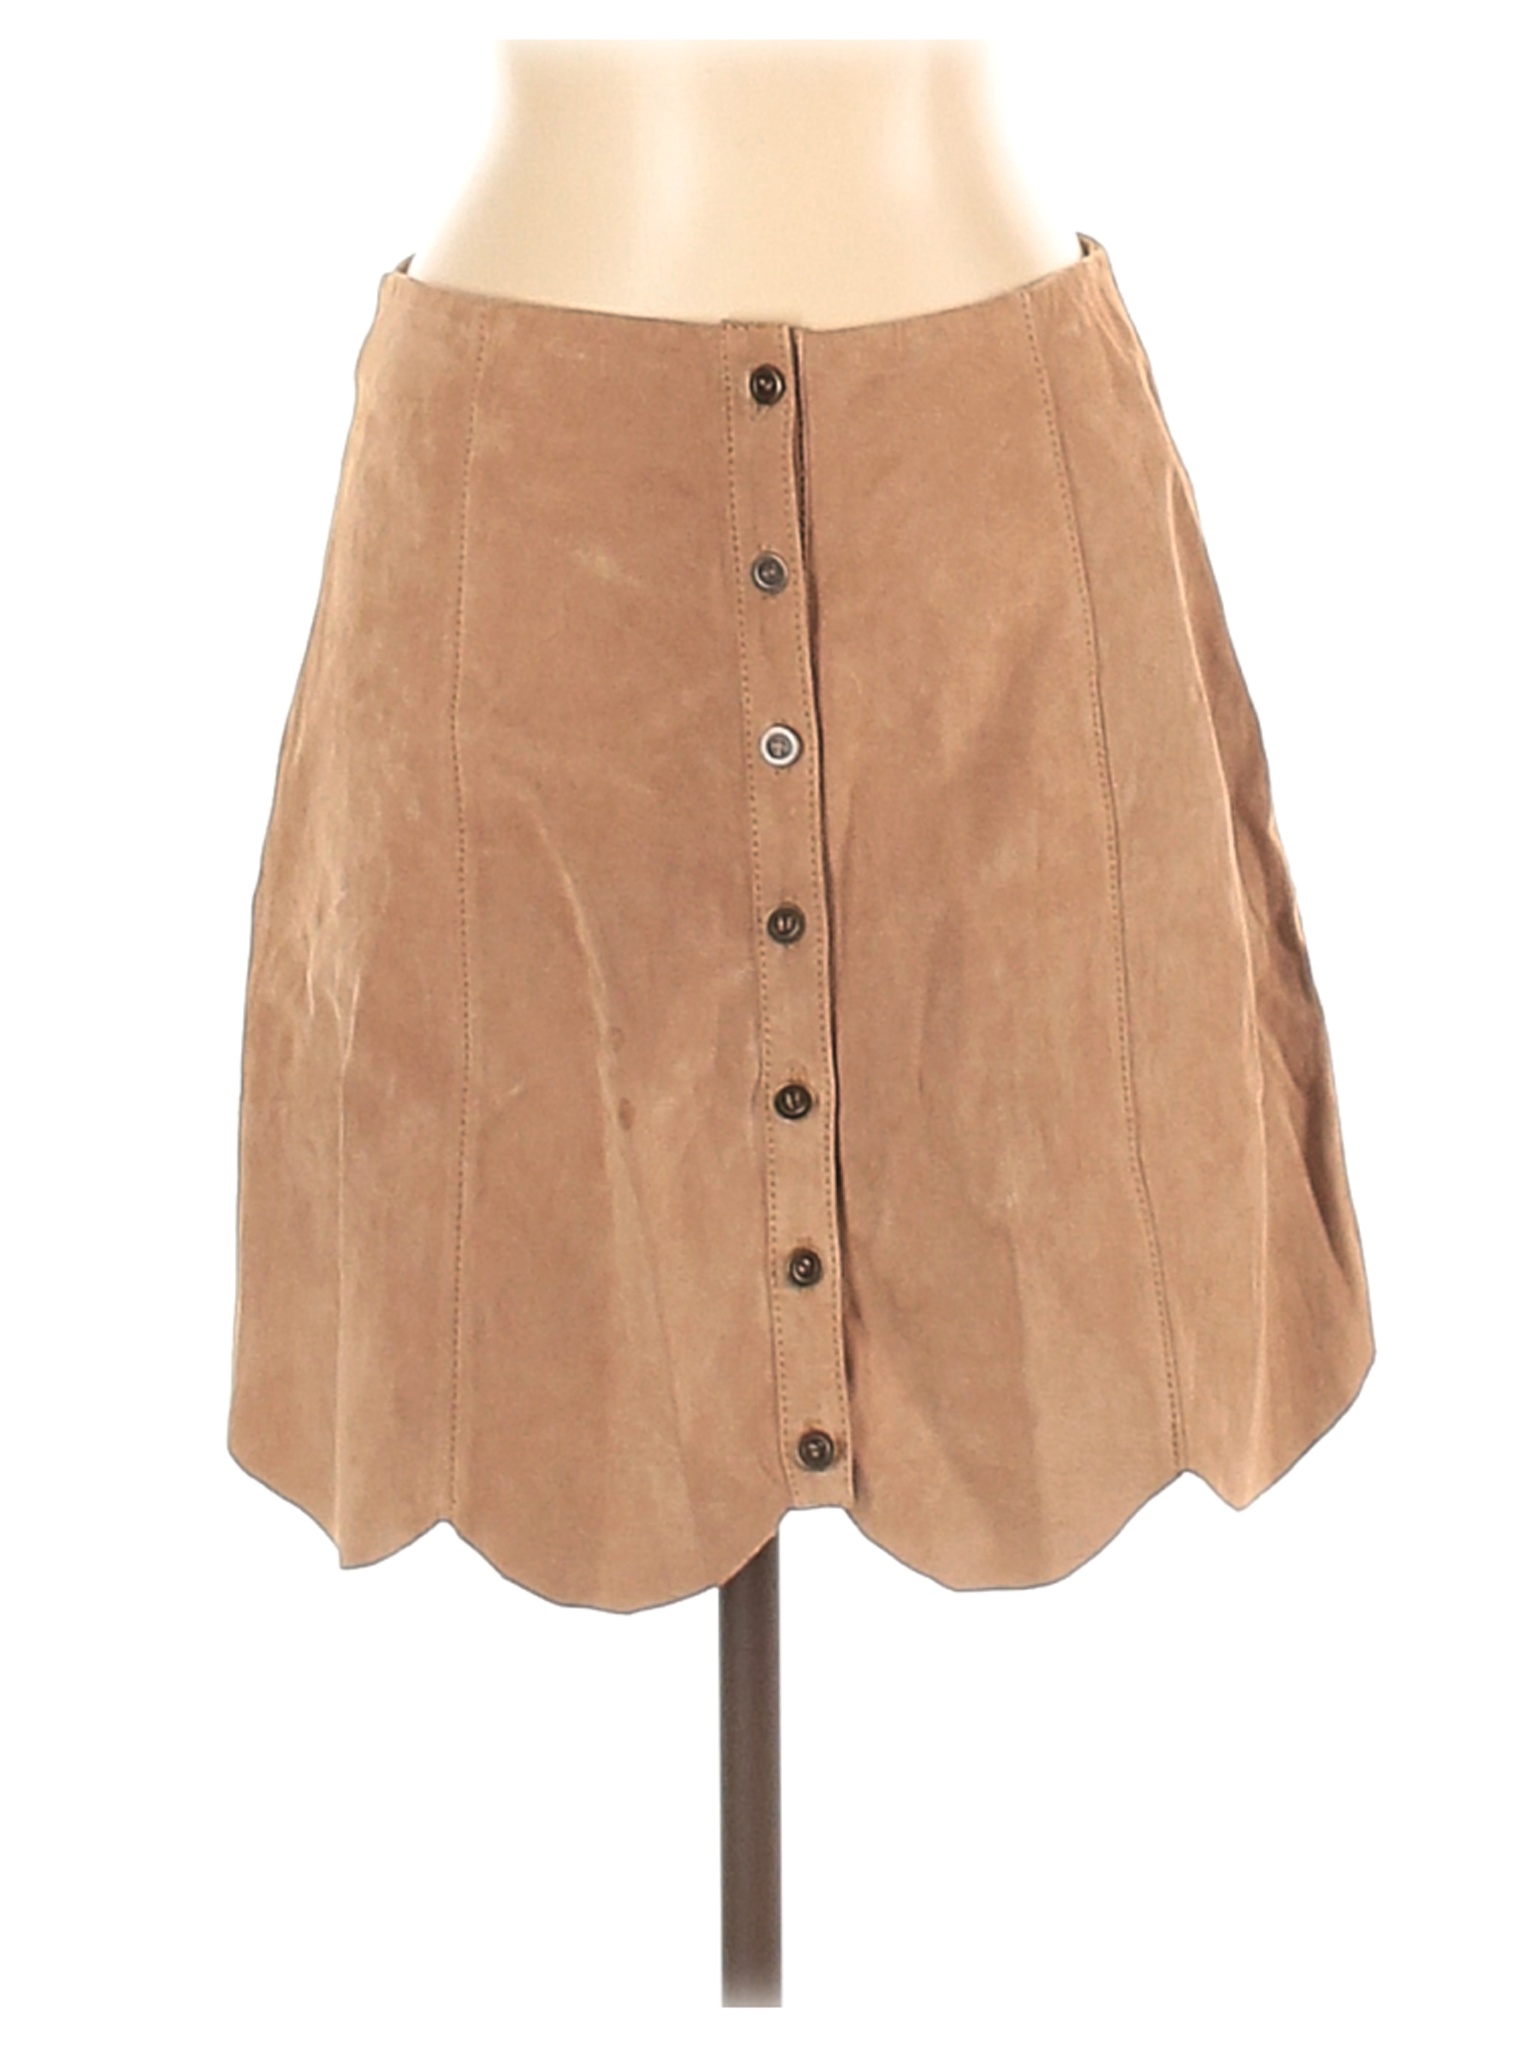 Bagatelle Women Brown Leather Skirt S | eBay